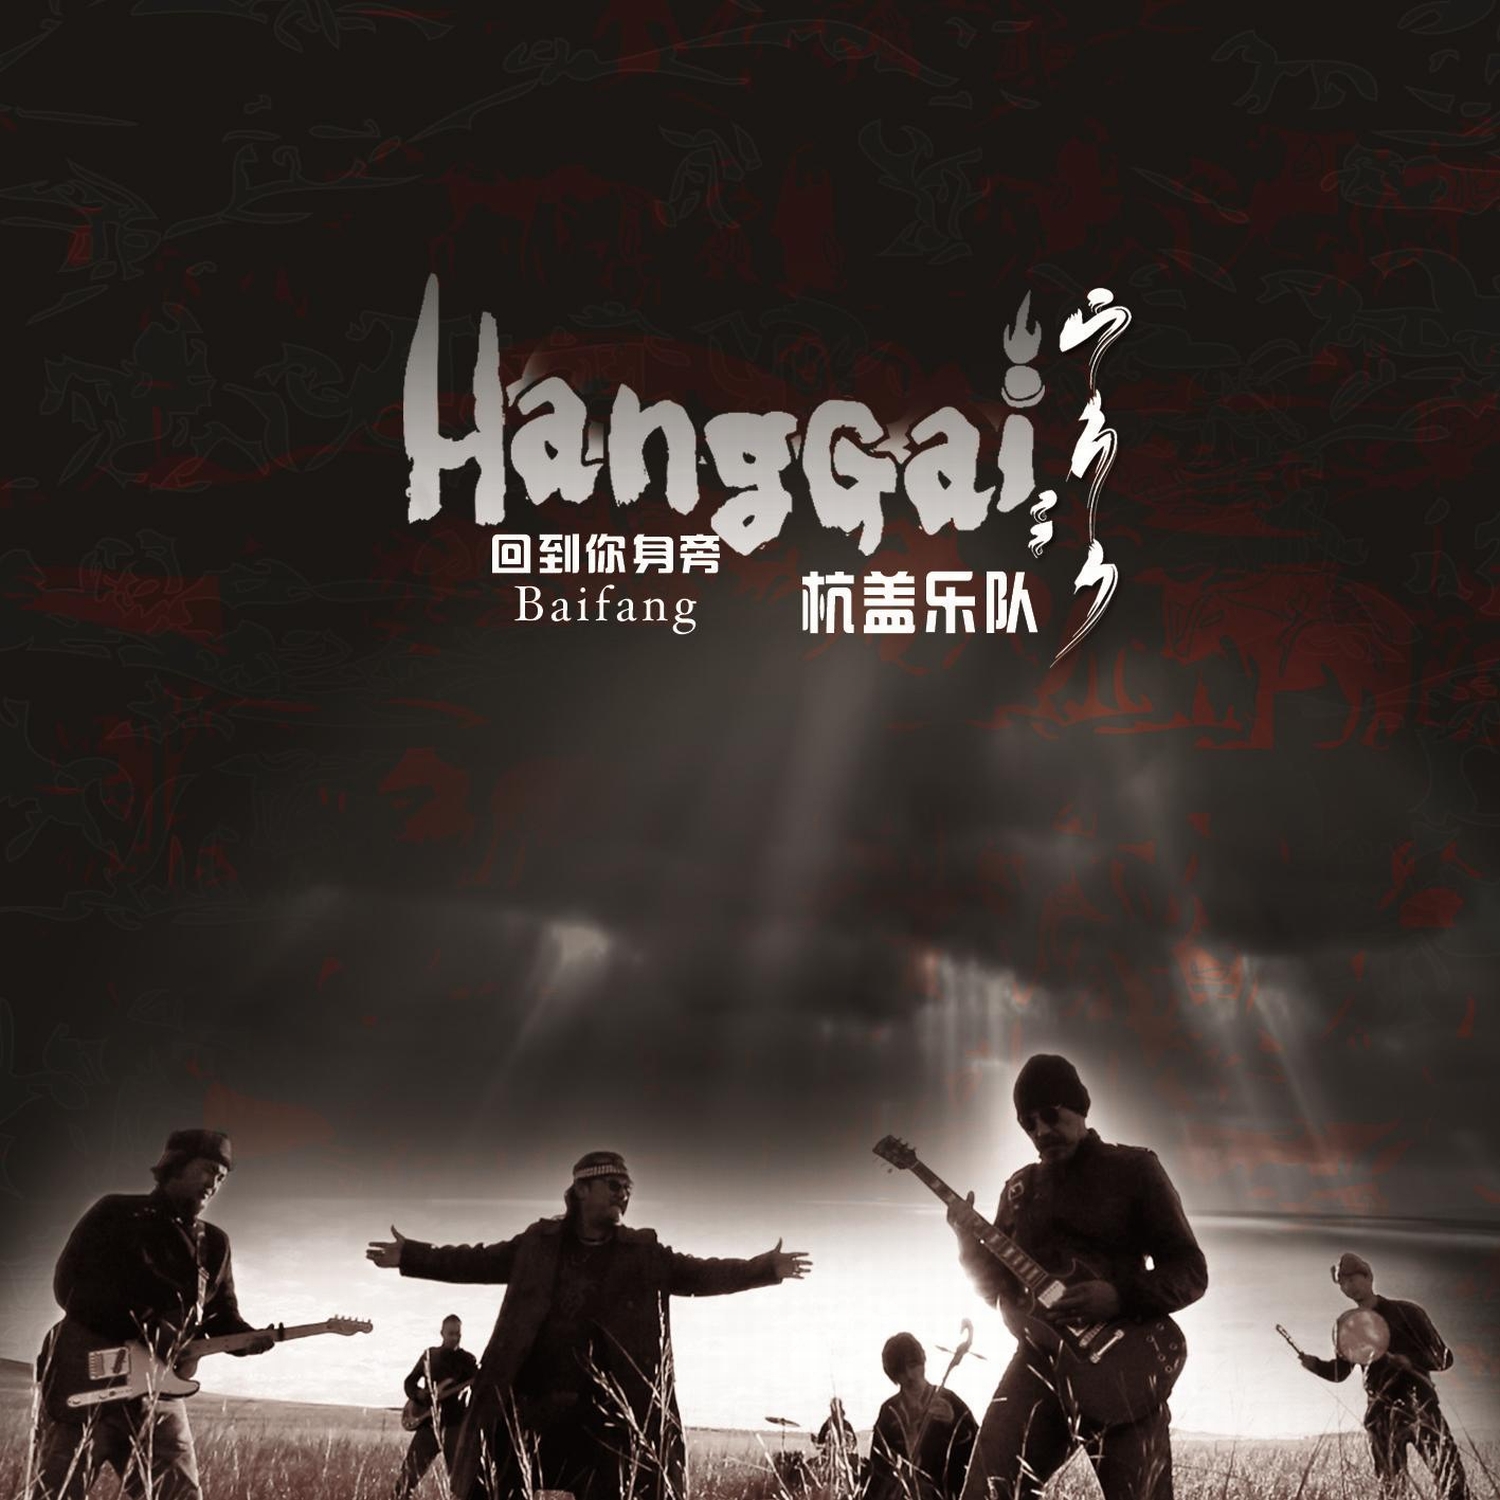 Hanggai – “Baifang“ (Harlem Recordings/Bertus)